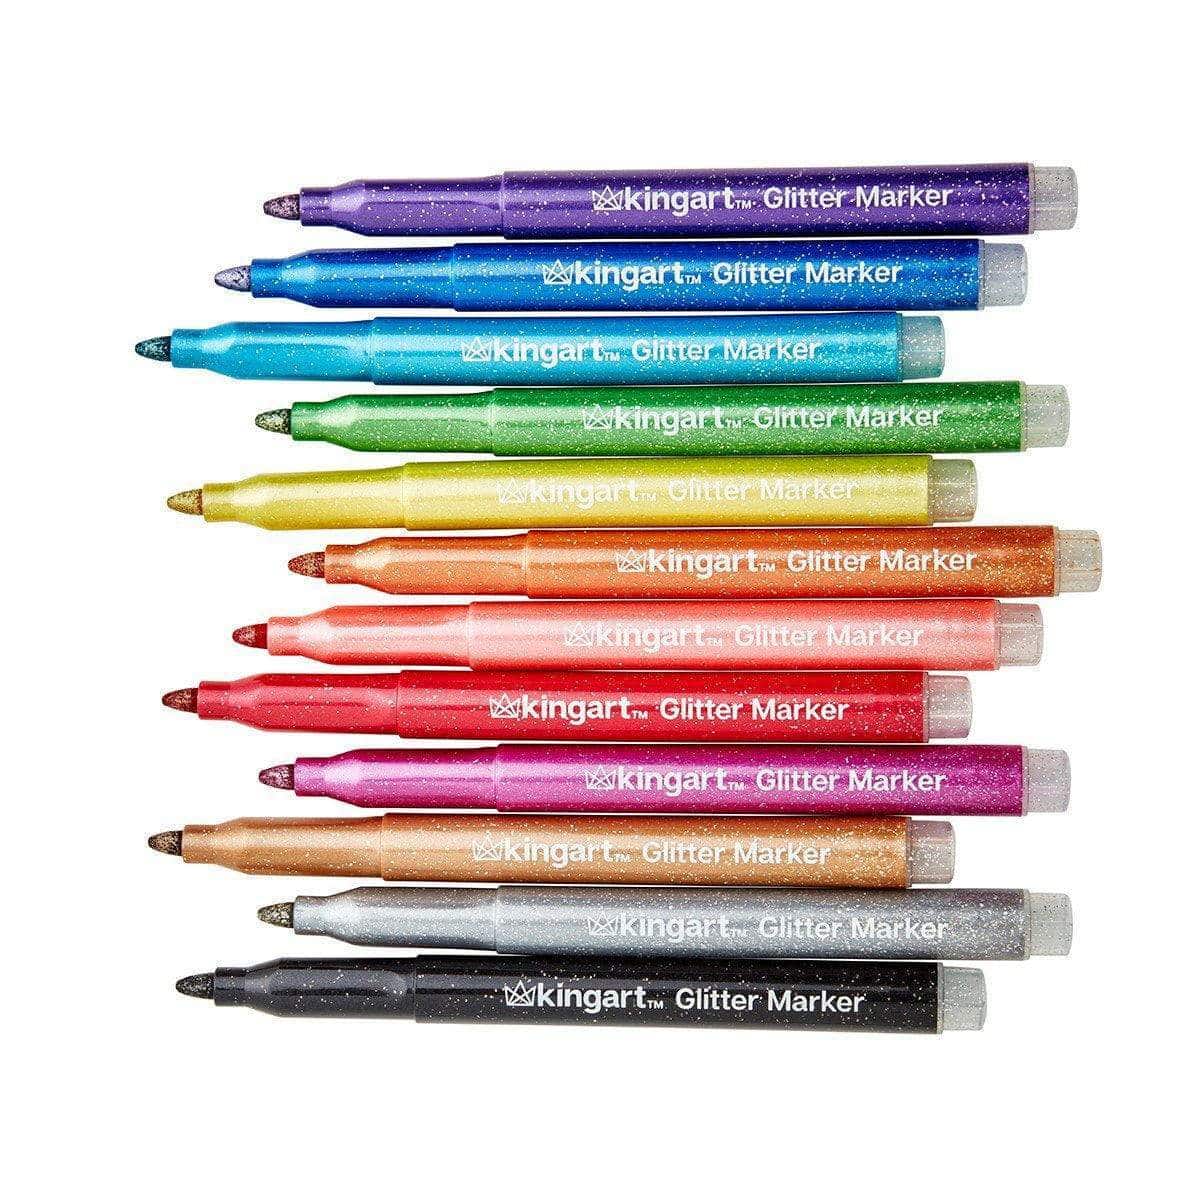 12 Glitter + 12 Multicolor Extra Fine Tip Paint Pens Bundle